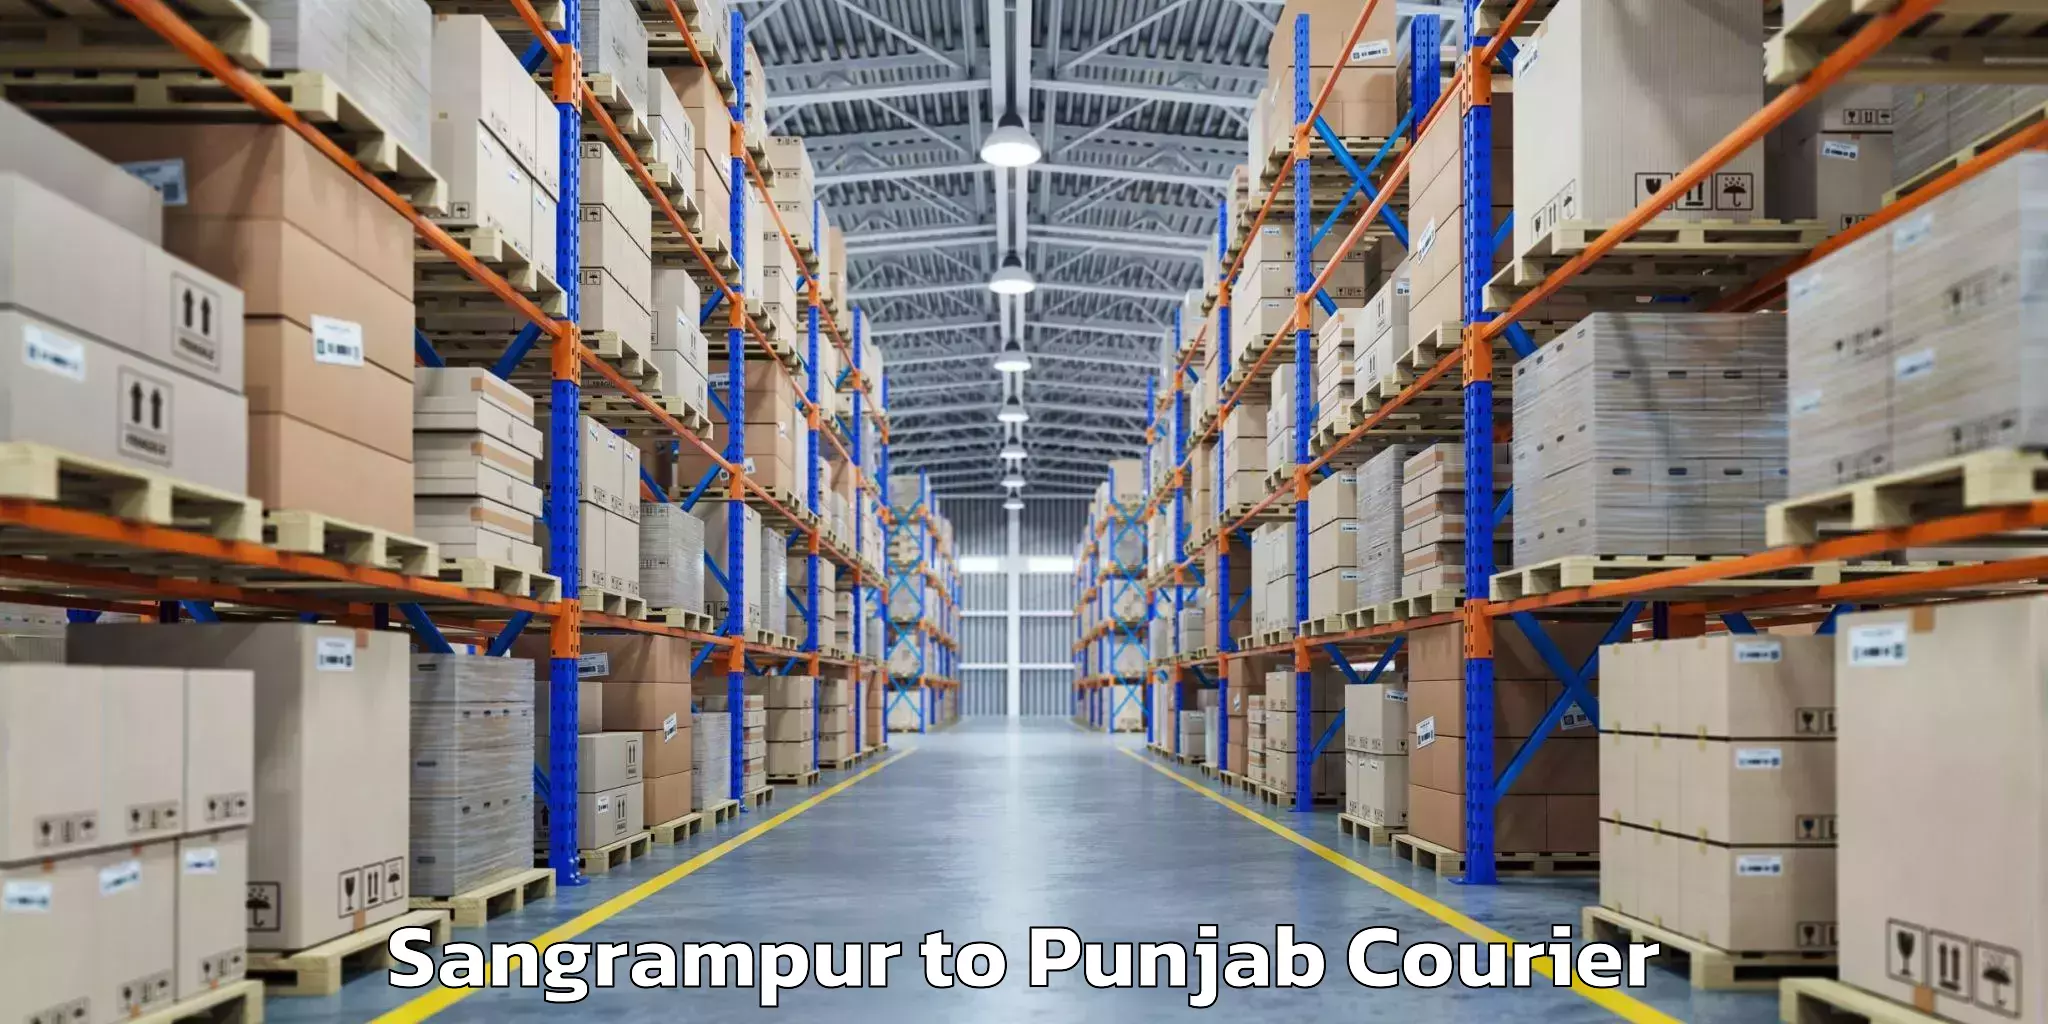 Luggage delivery news Sangrampur to Mandi Gobindgarh